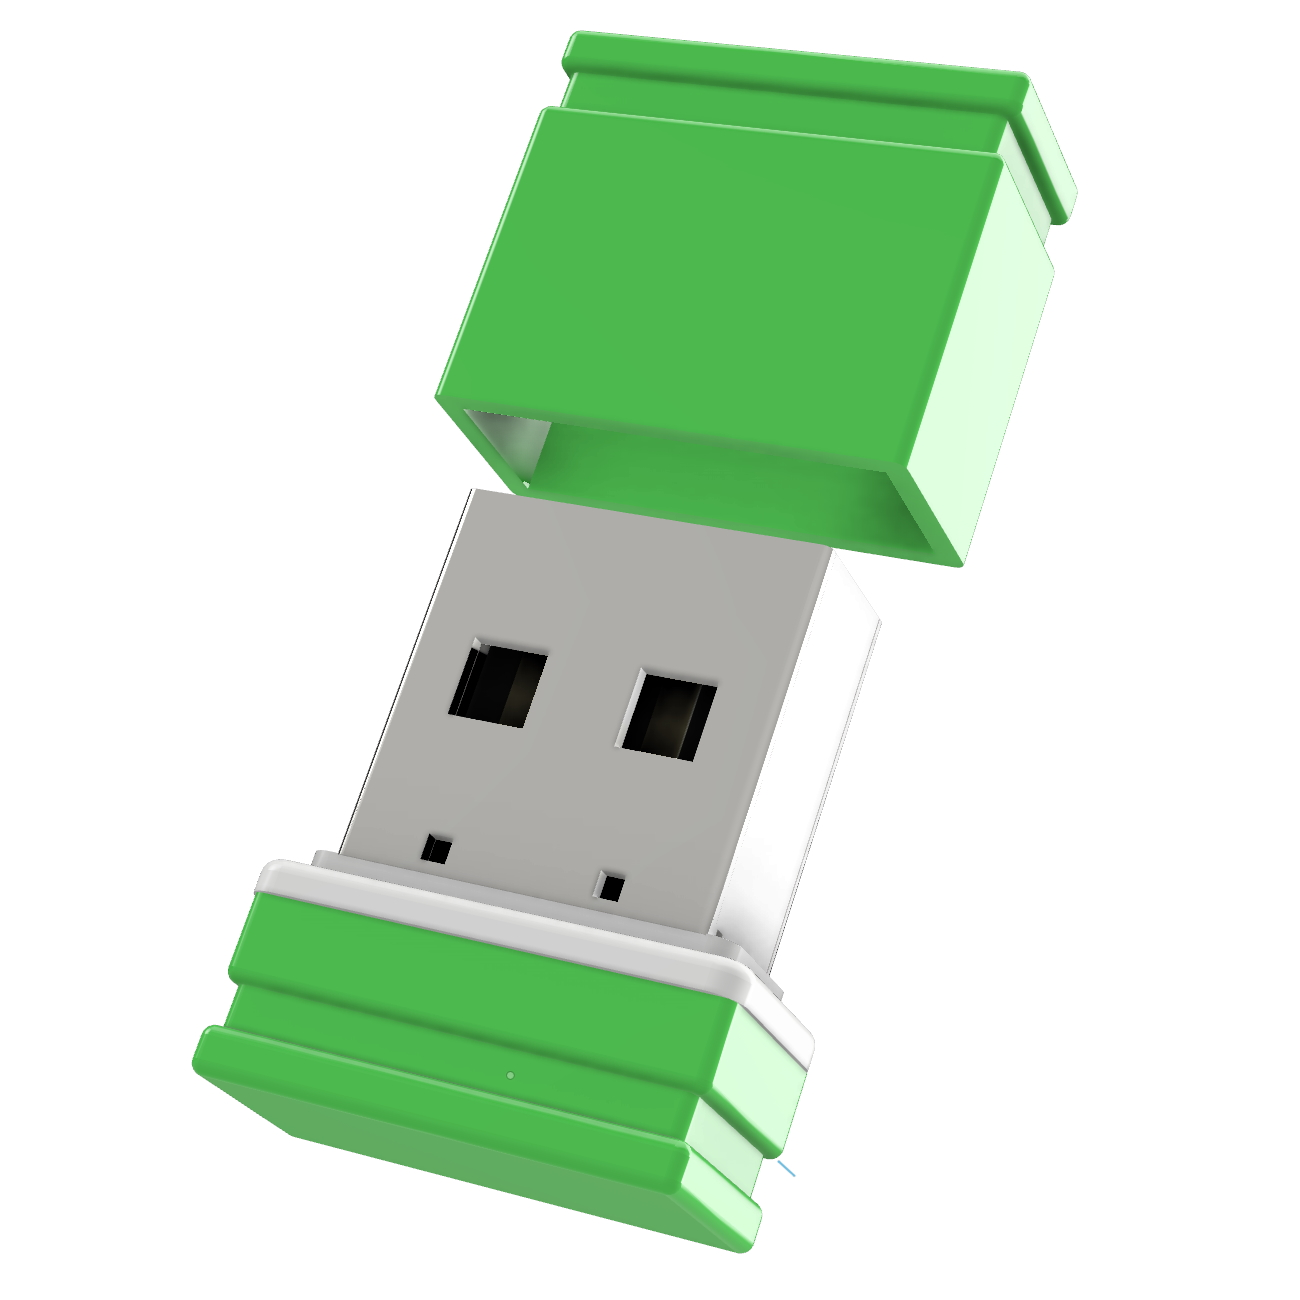 ®ULTRA GERMANY GB) (Grün/Weiss, P1 1 USB Mini USB-Stick